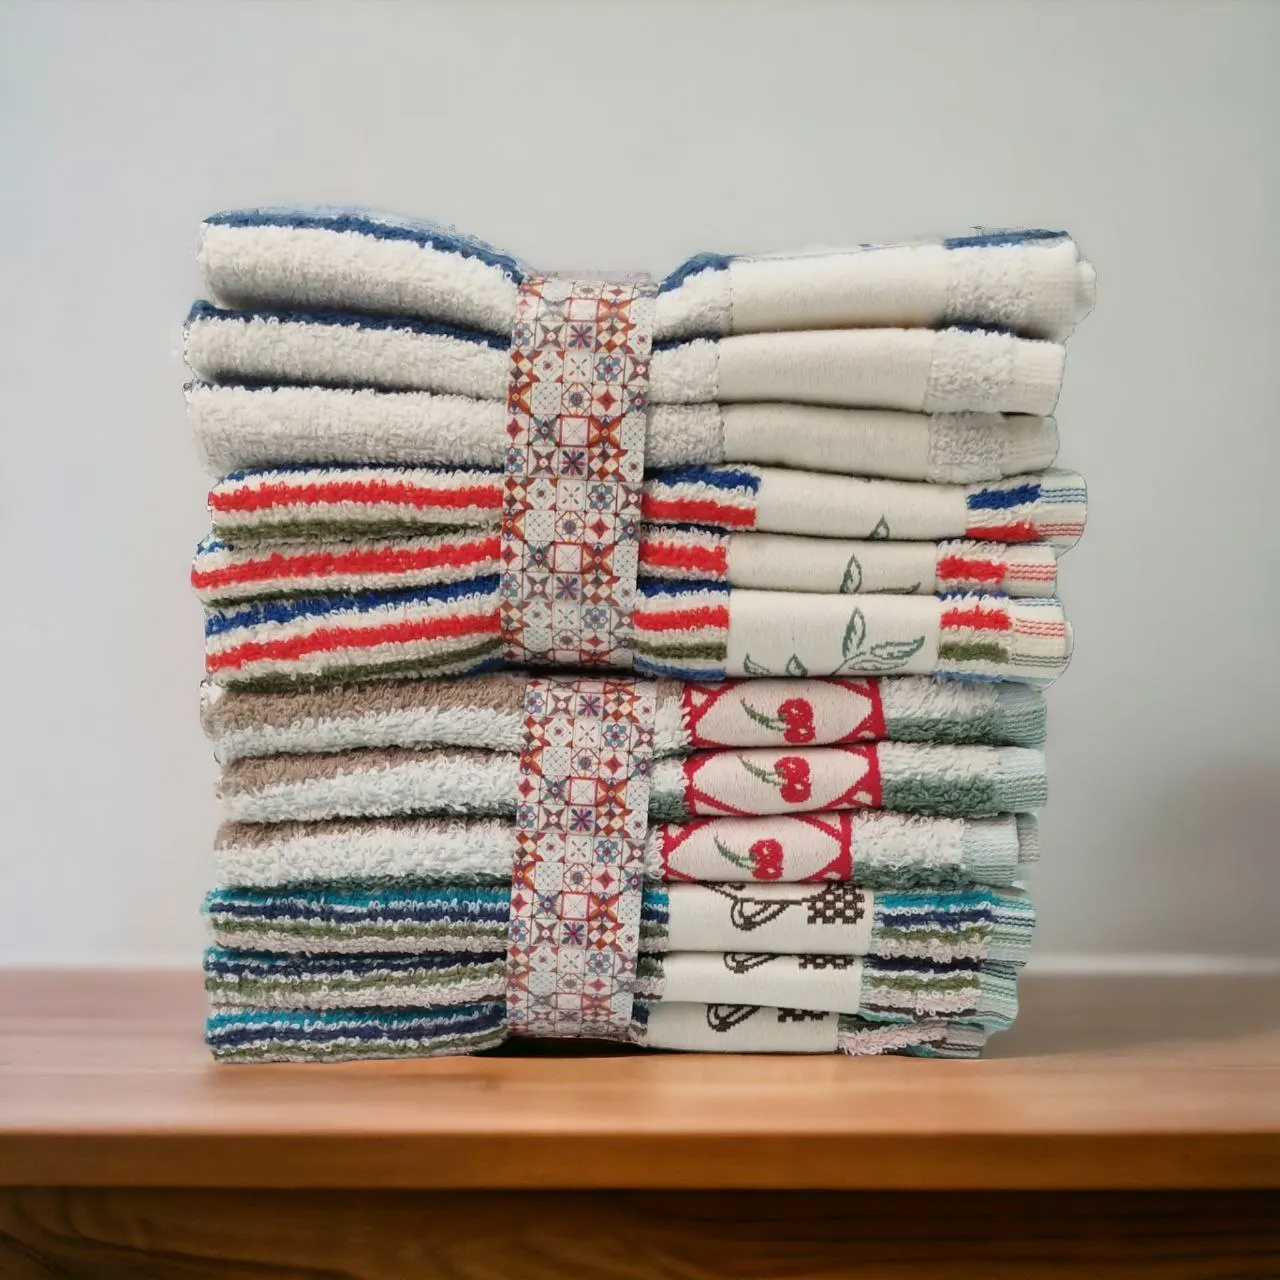 Paños trapos toallas de Cocina Surtidos de Rizo Americano de algodón 100%  de Portugal 450gm de Grosor➡👌Se envía 24/48 horas